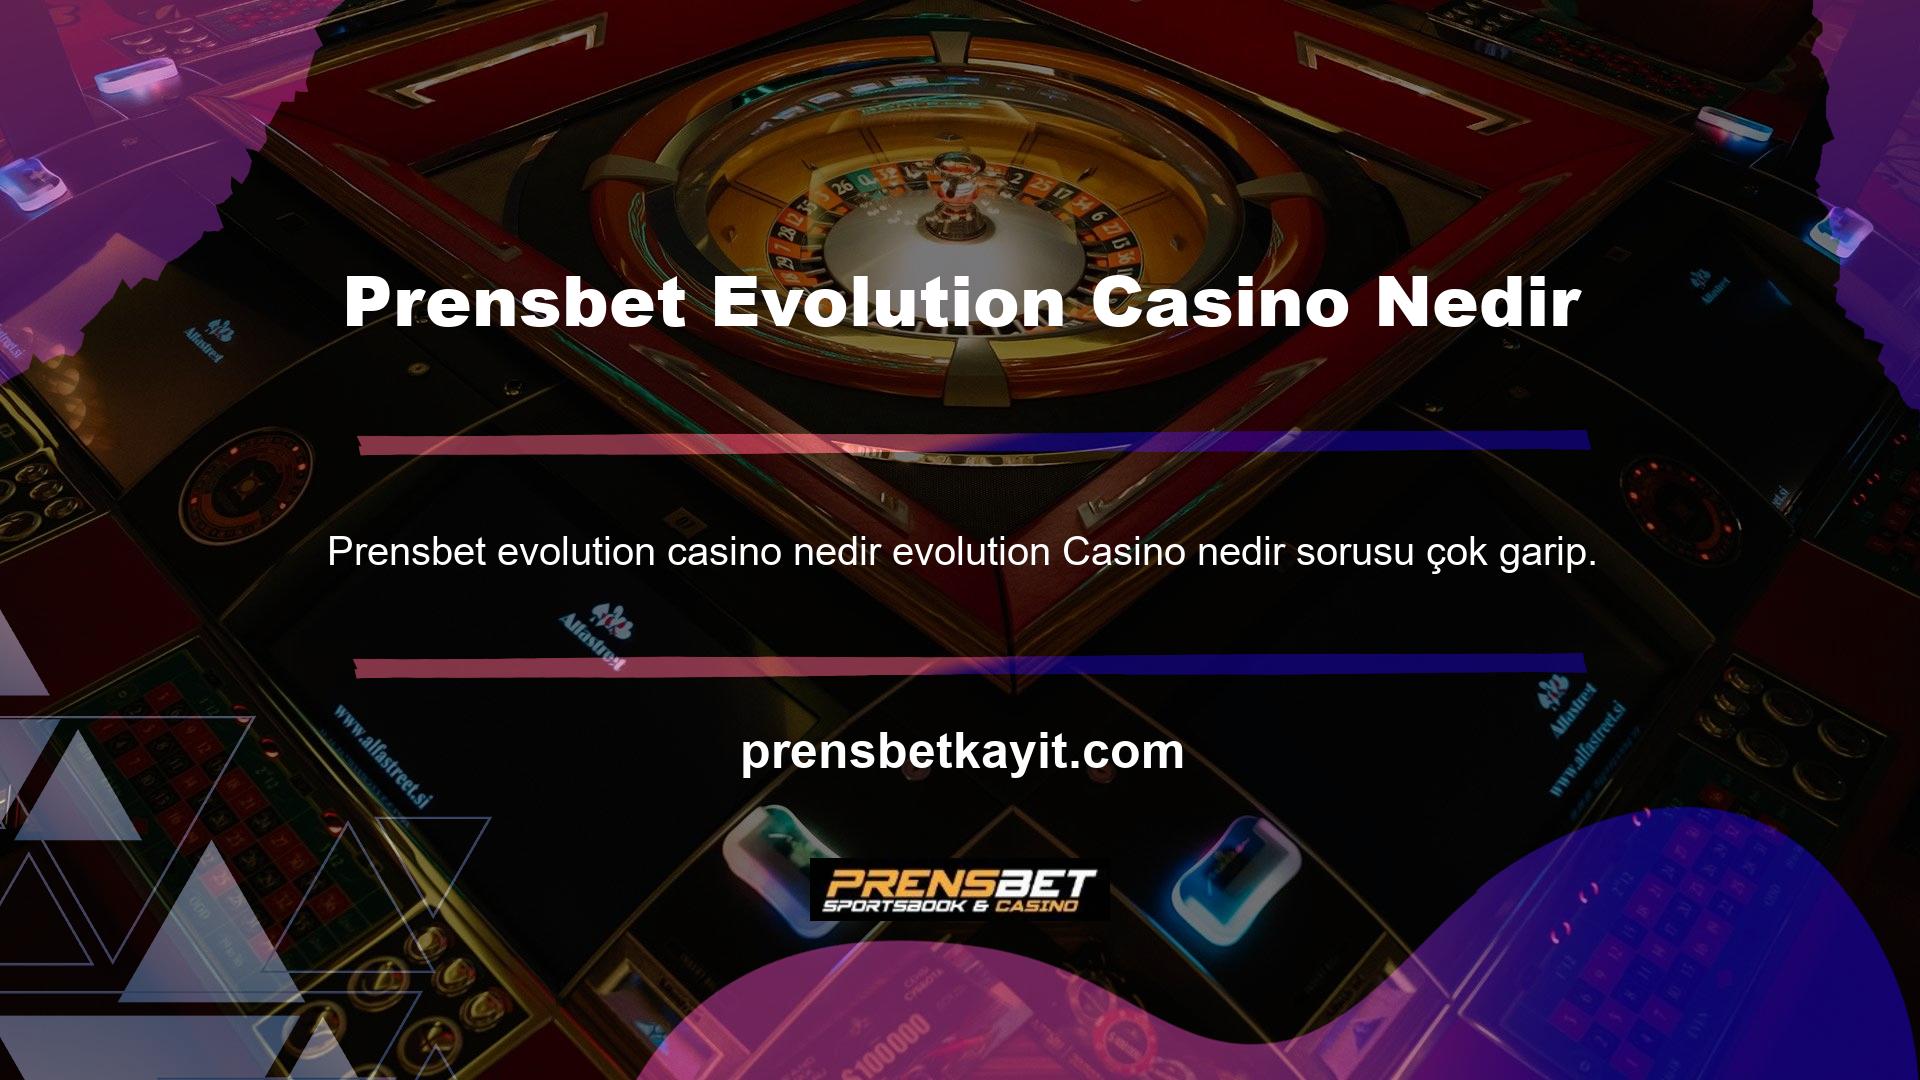 Teknolojinin gelişmesiyle birlikte casino tutkunları için online platformlar ortaya çıkmıştır